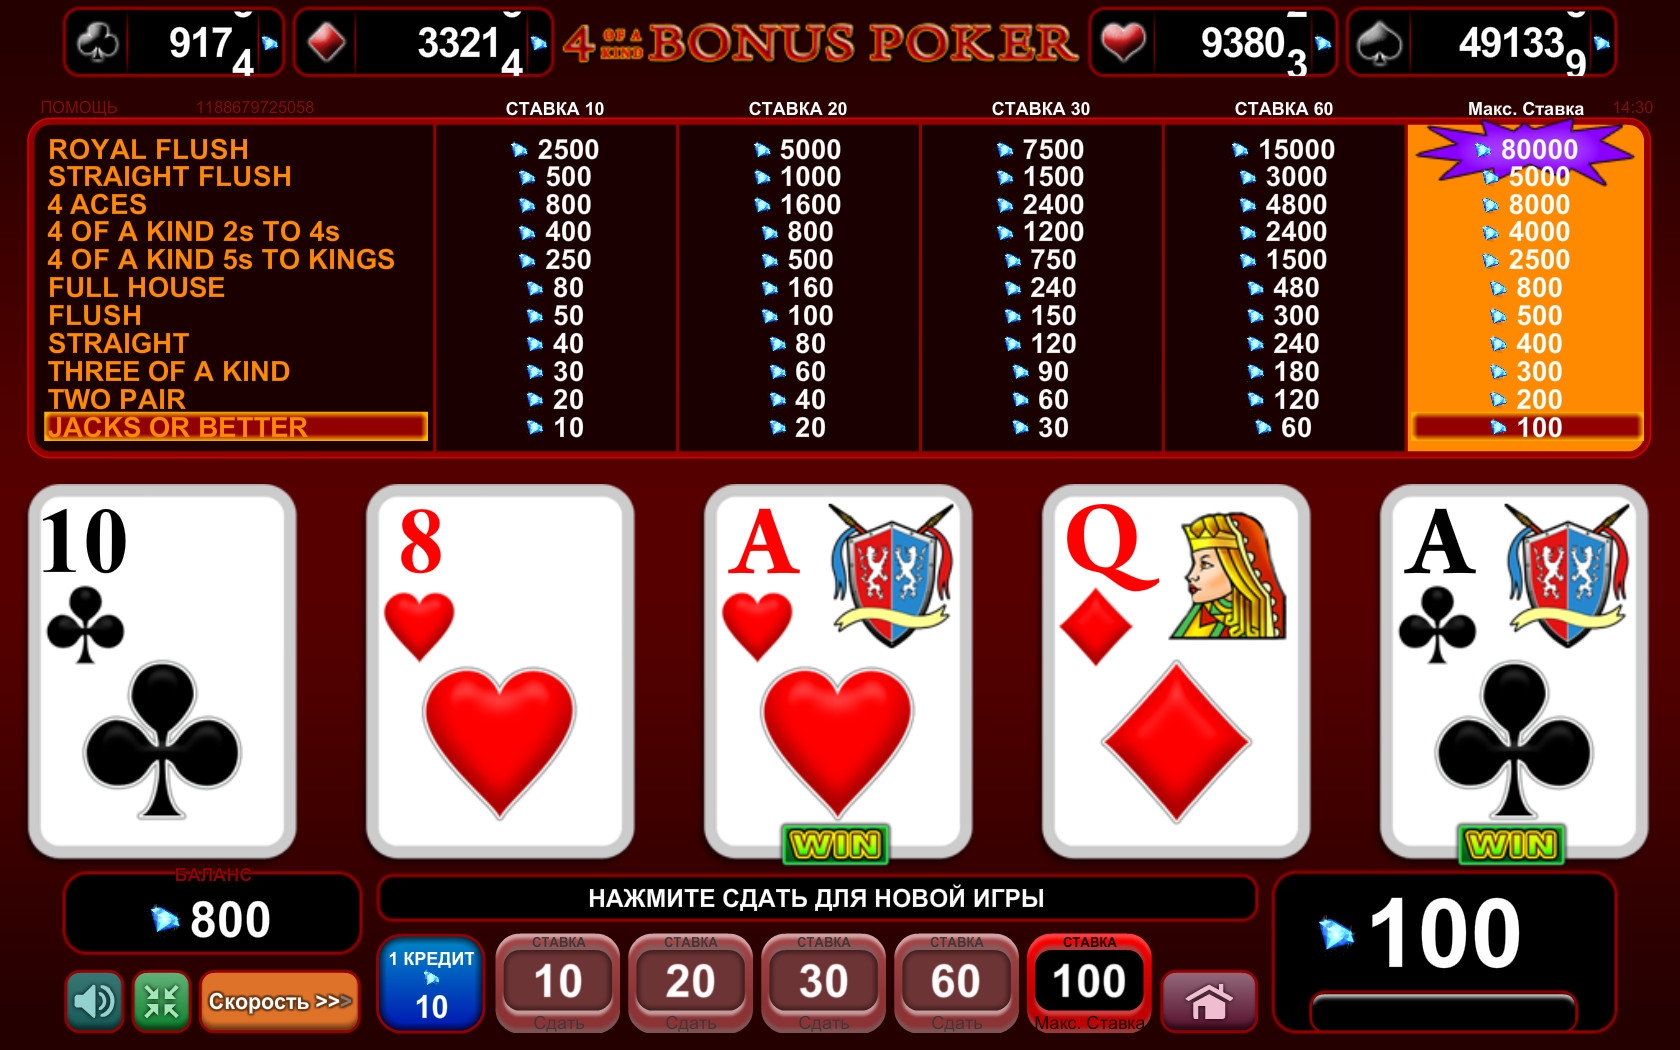 4 of a Kind Bonus Poker (4 of a Kind Bonus Poker) from category Video Poker